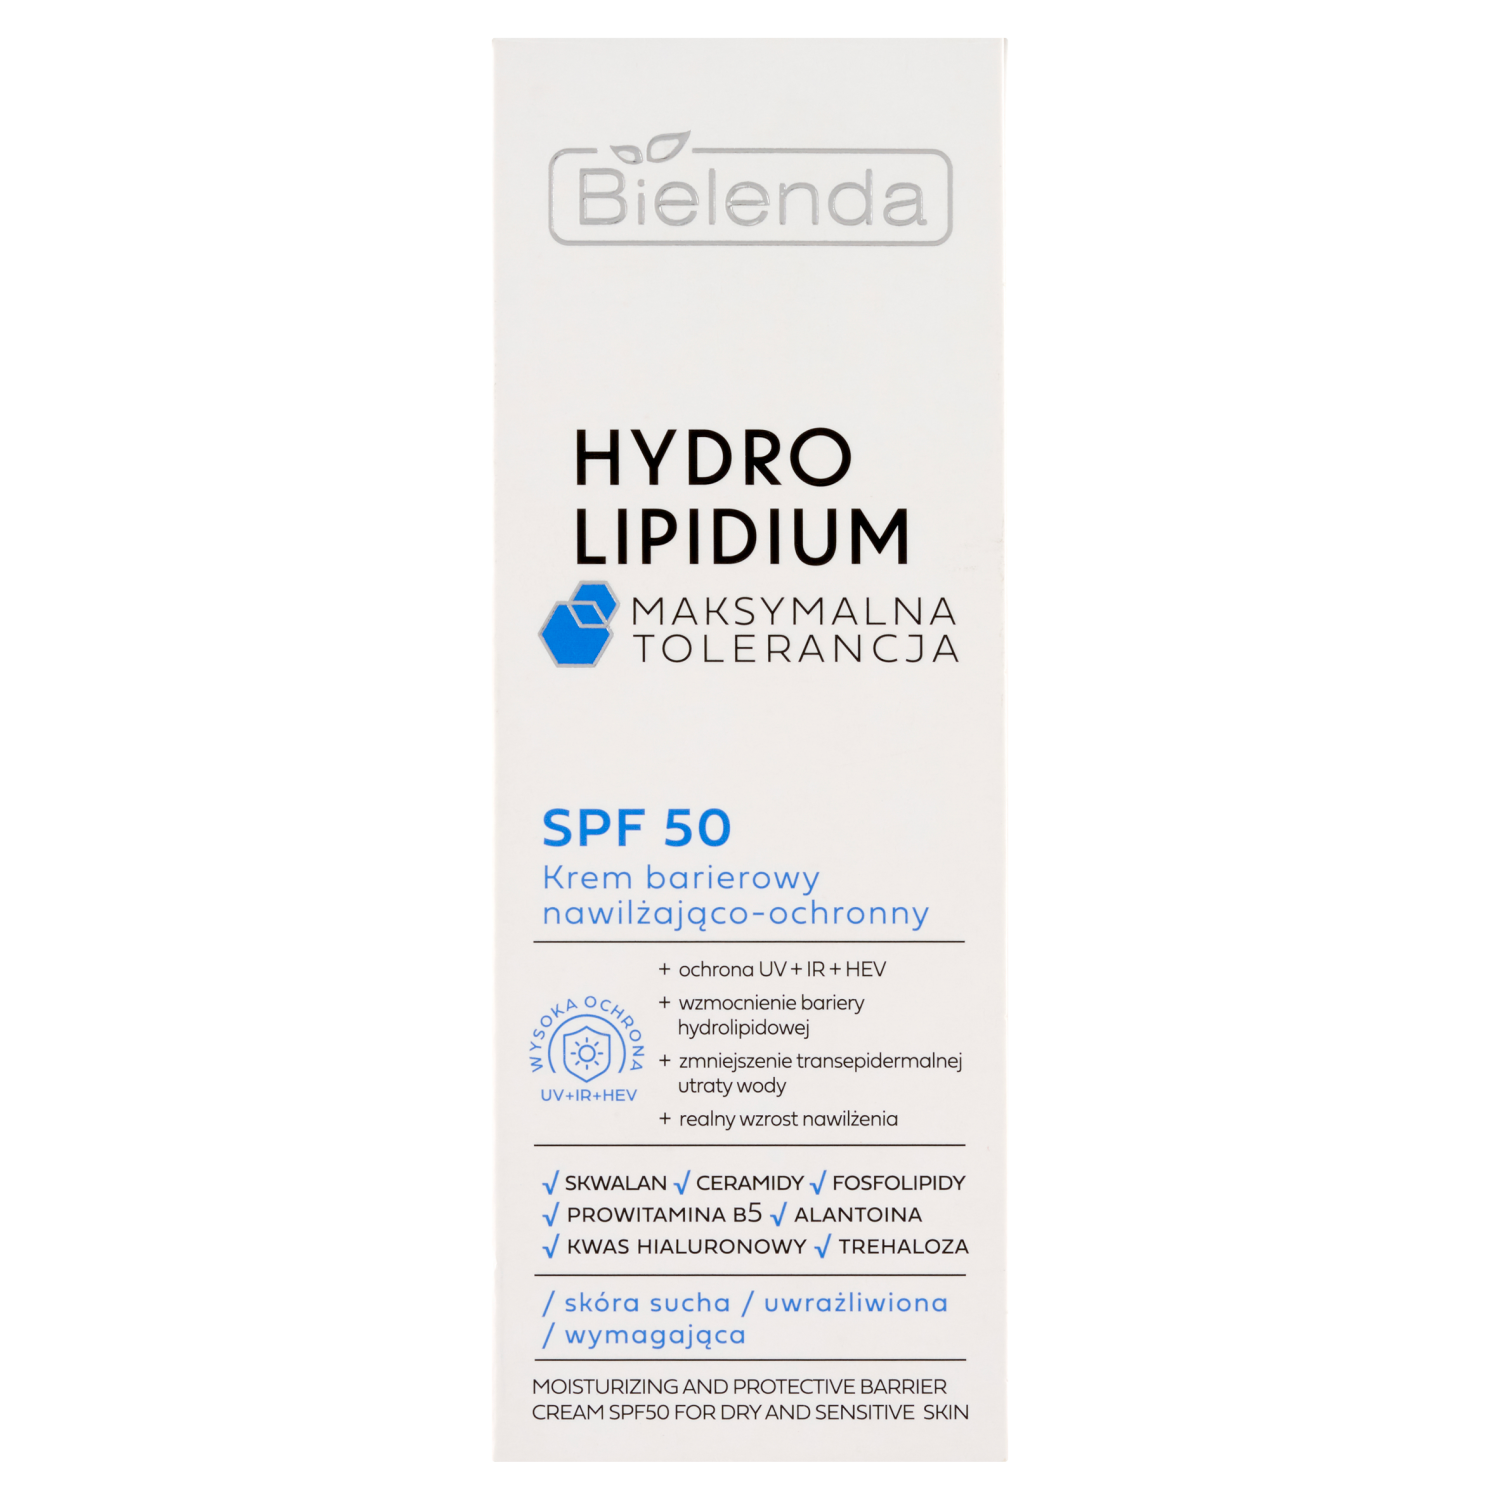 Увлажняющий и защитный барьерный крем с spf50 для лица Bielenda Hydro Lipidium, 30 мл судокрем эксперт крем барьерный 8% 125 г sudocrem